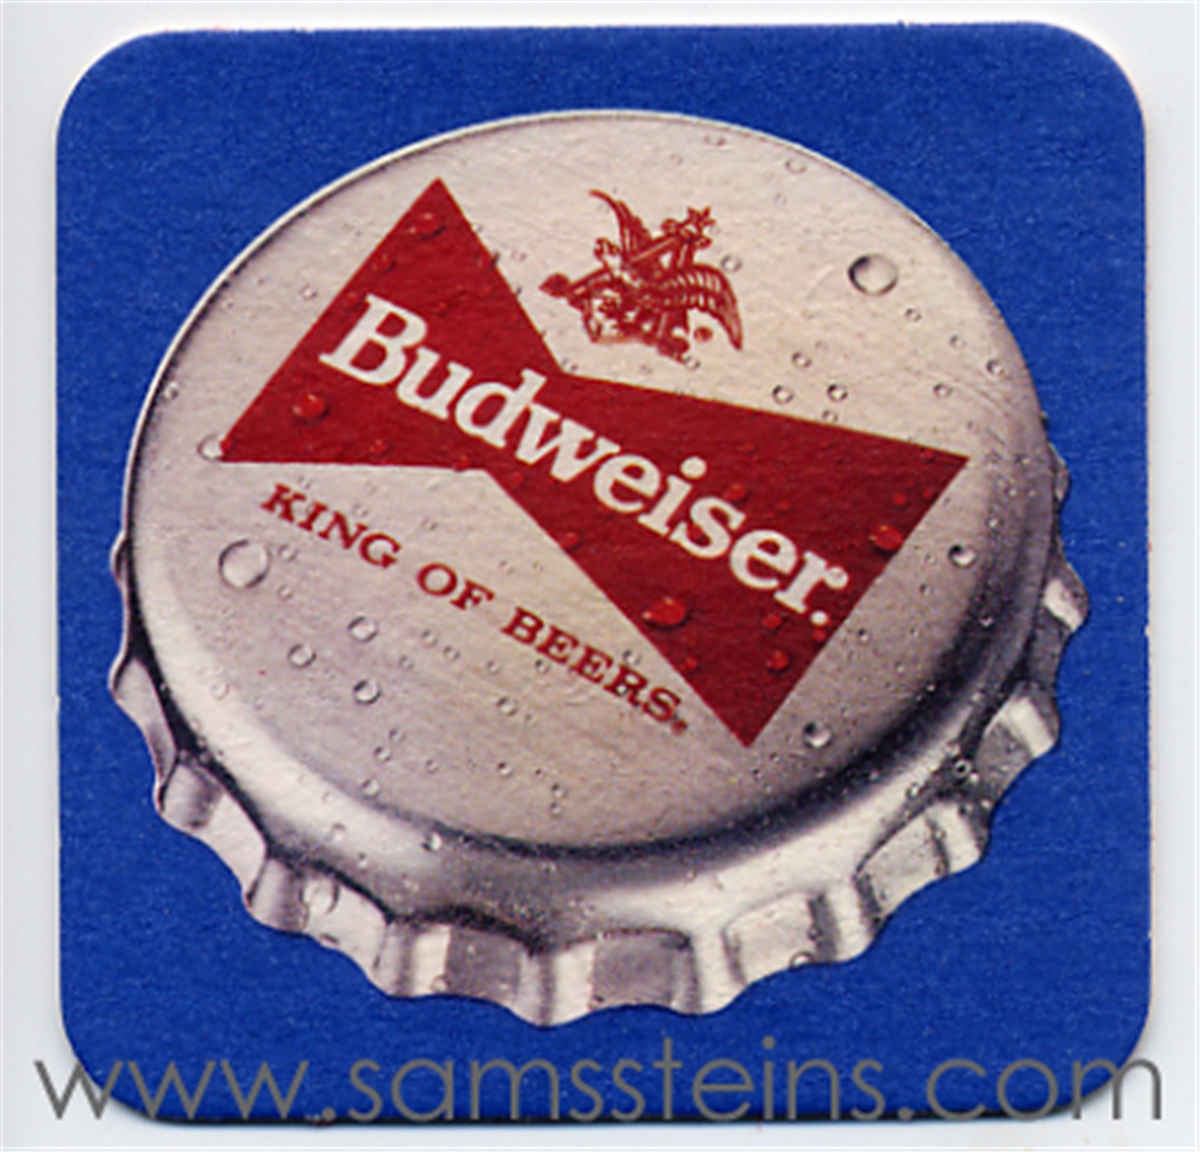 Budweiser Bottle Cap Beer Coaster